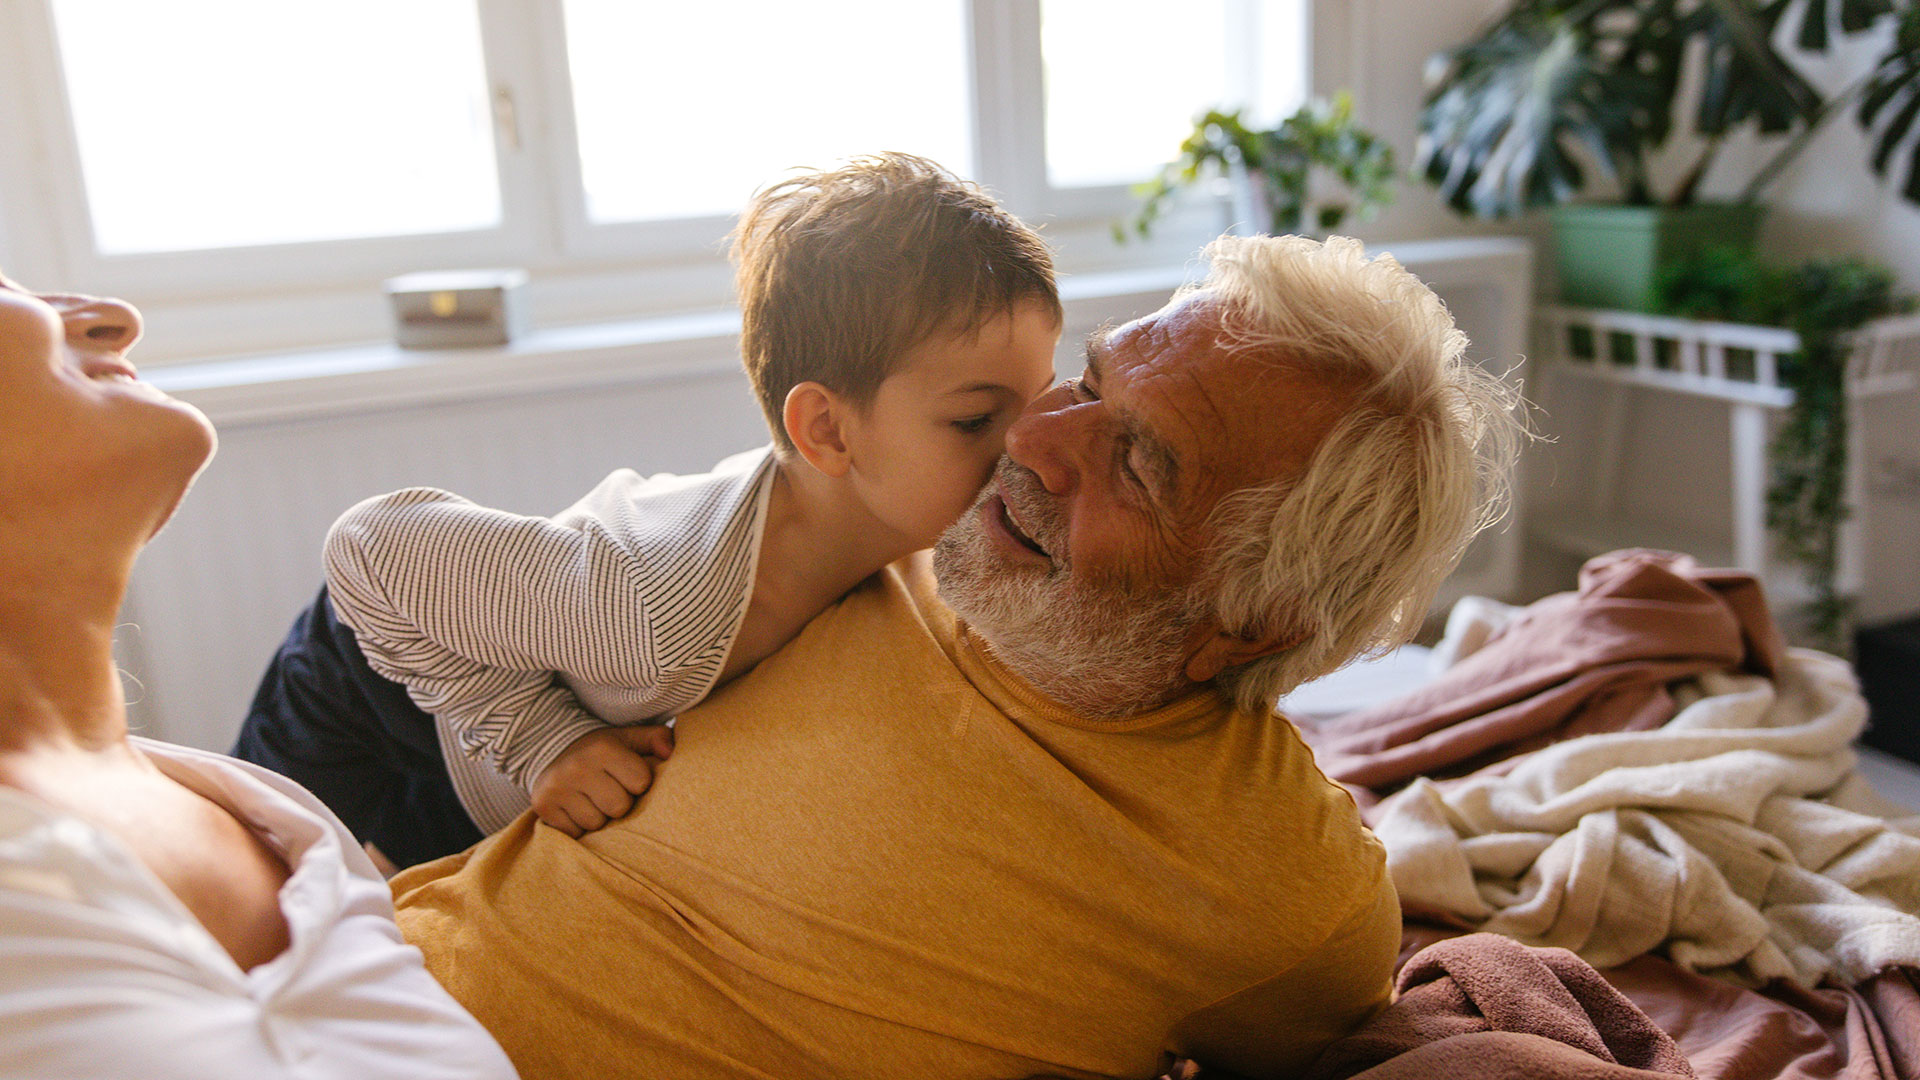 Entre 2015 y 2030 se prevé un aumento sustancial de población de personas mayores de 60 años en todo el mundo (Getty Images)